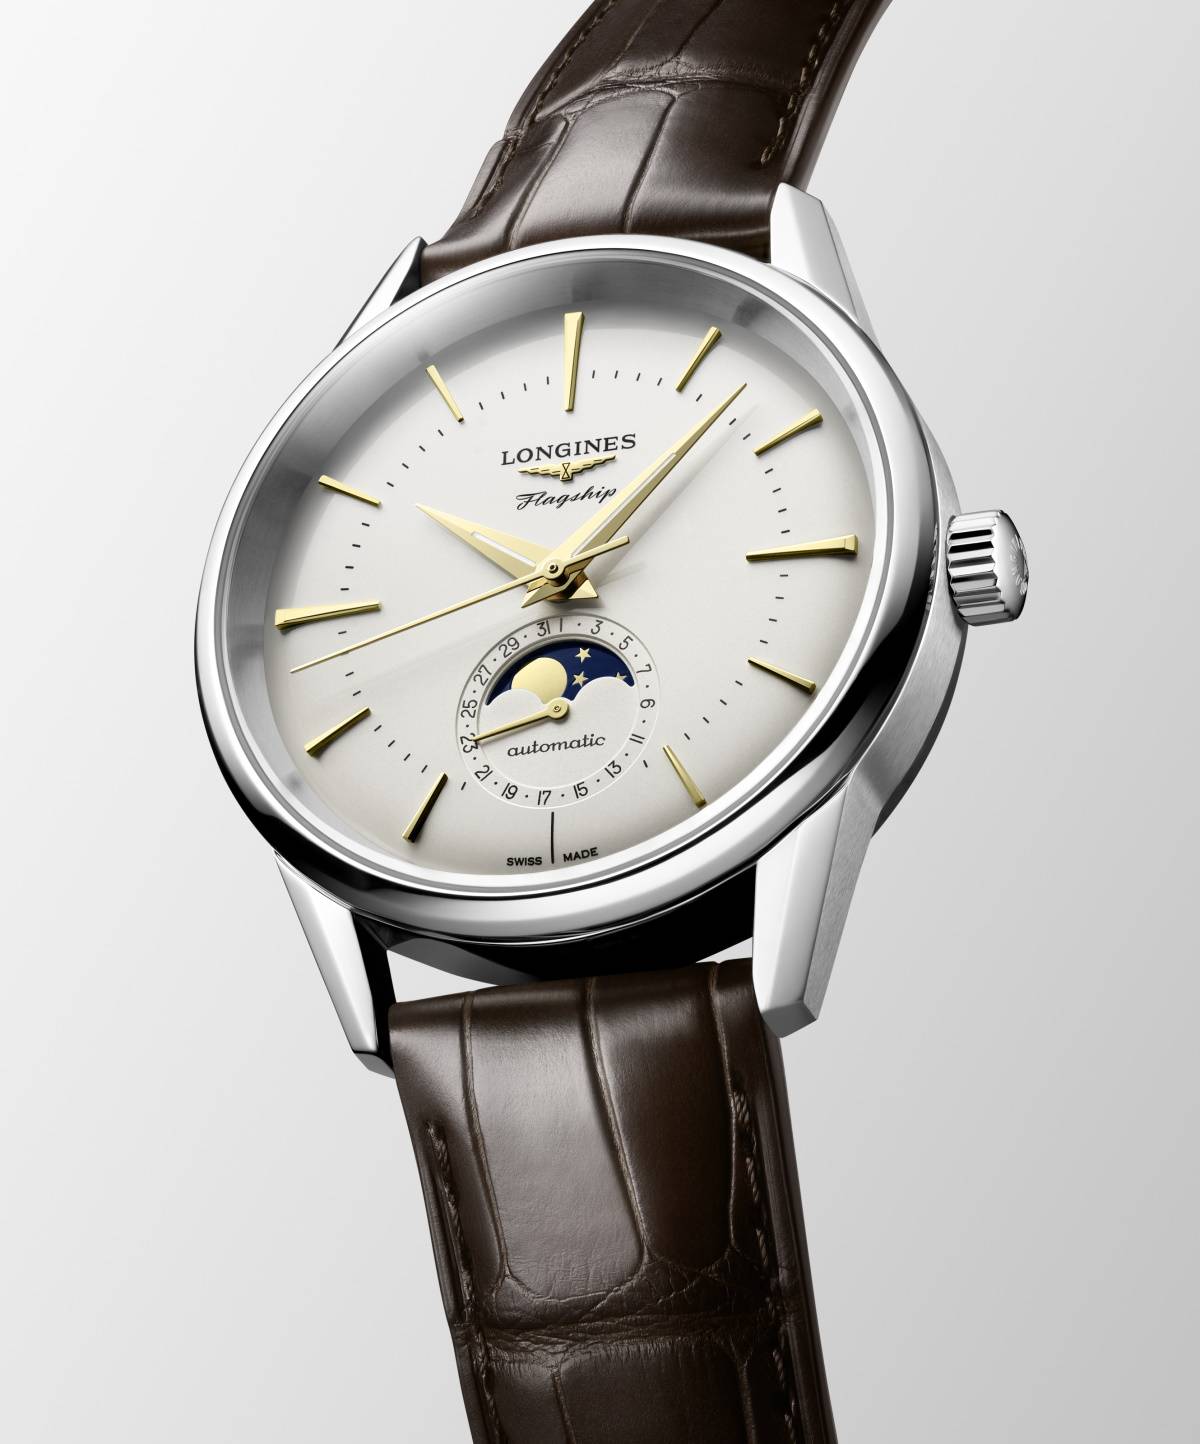 Nowe modele zegarków linii Flagship Heritage Longines. Longines rozszerzyło linię Flagship Heritage o nowe modele zegarków. W kolekcji znalazły się stylowe projekty wyposażone w komplikację faz księżyca.